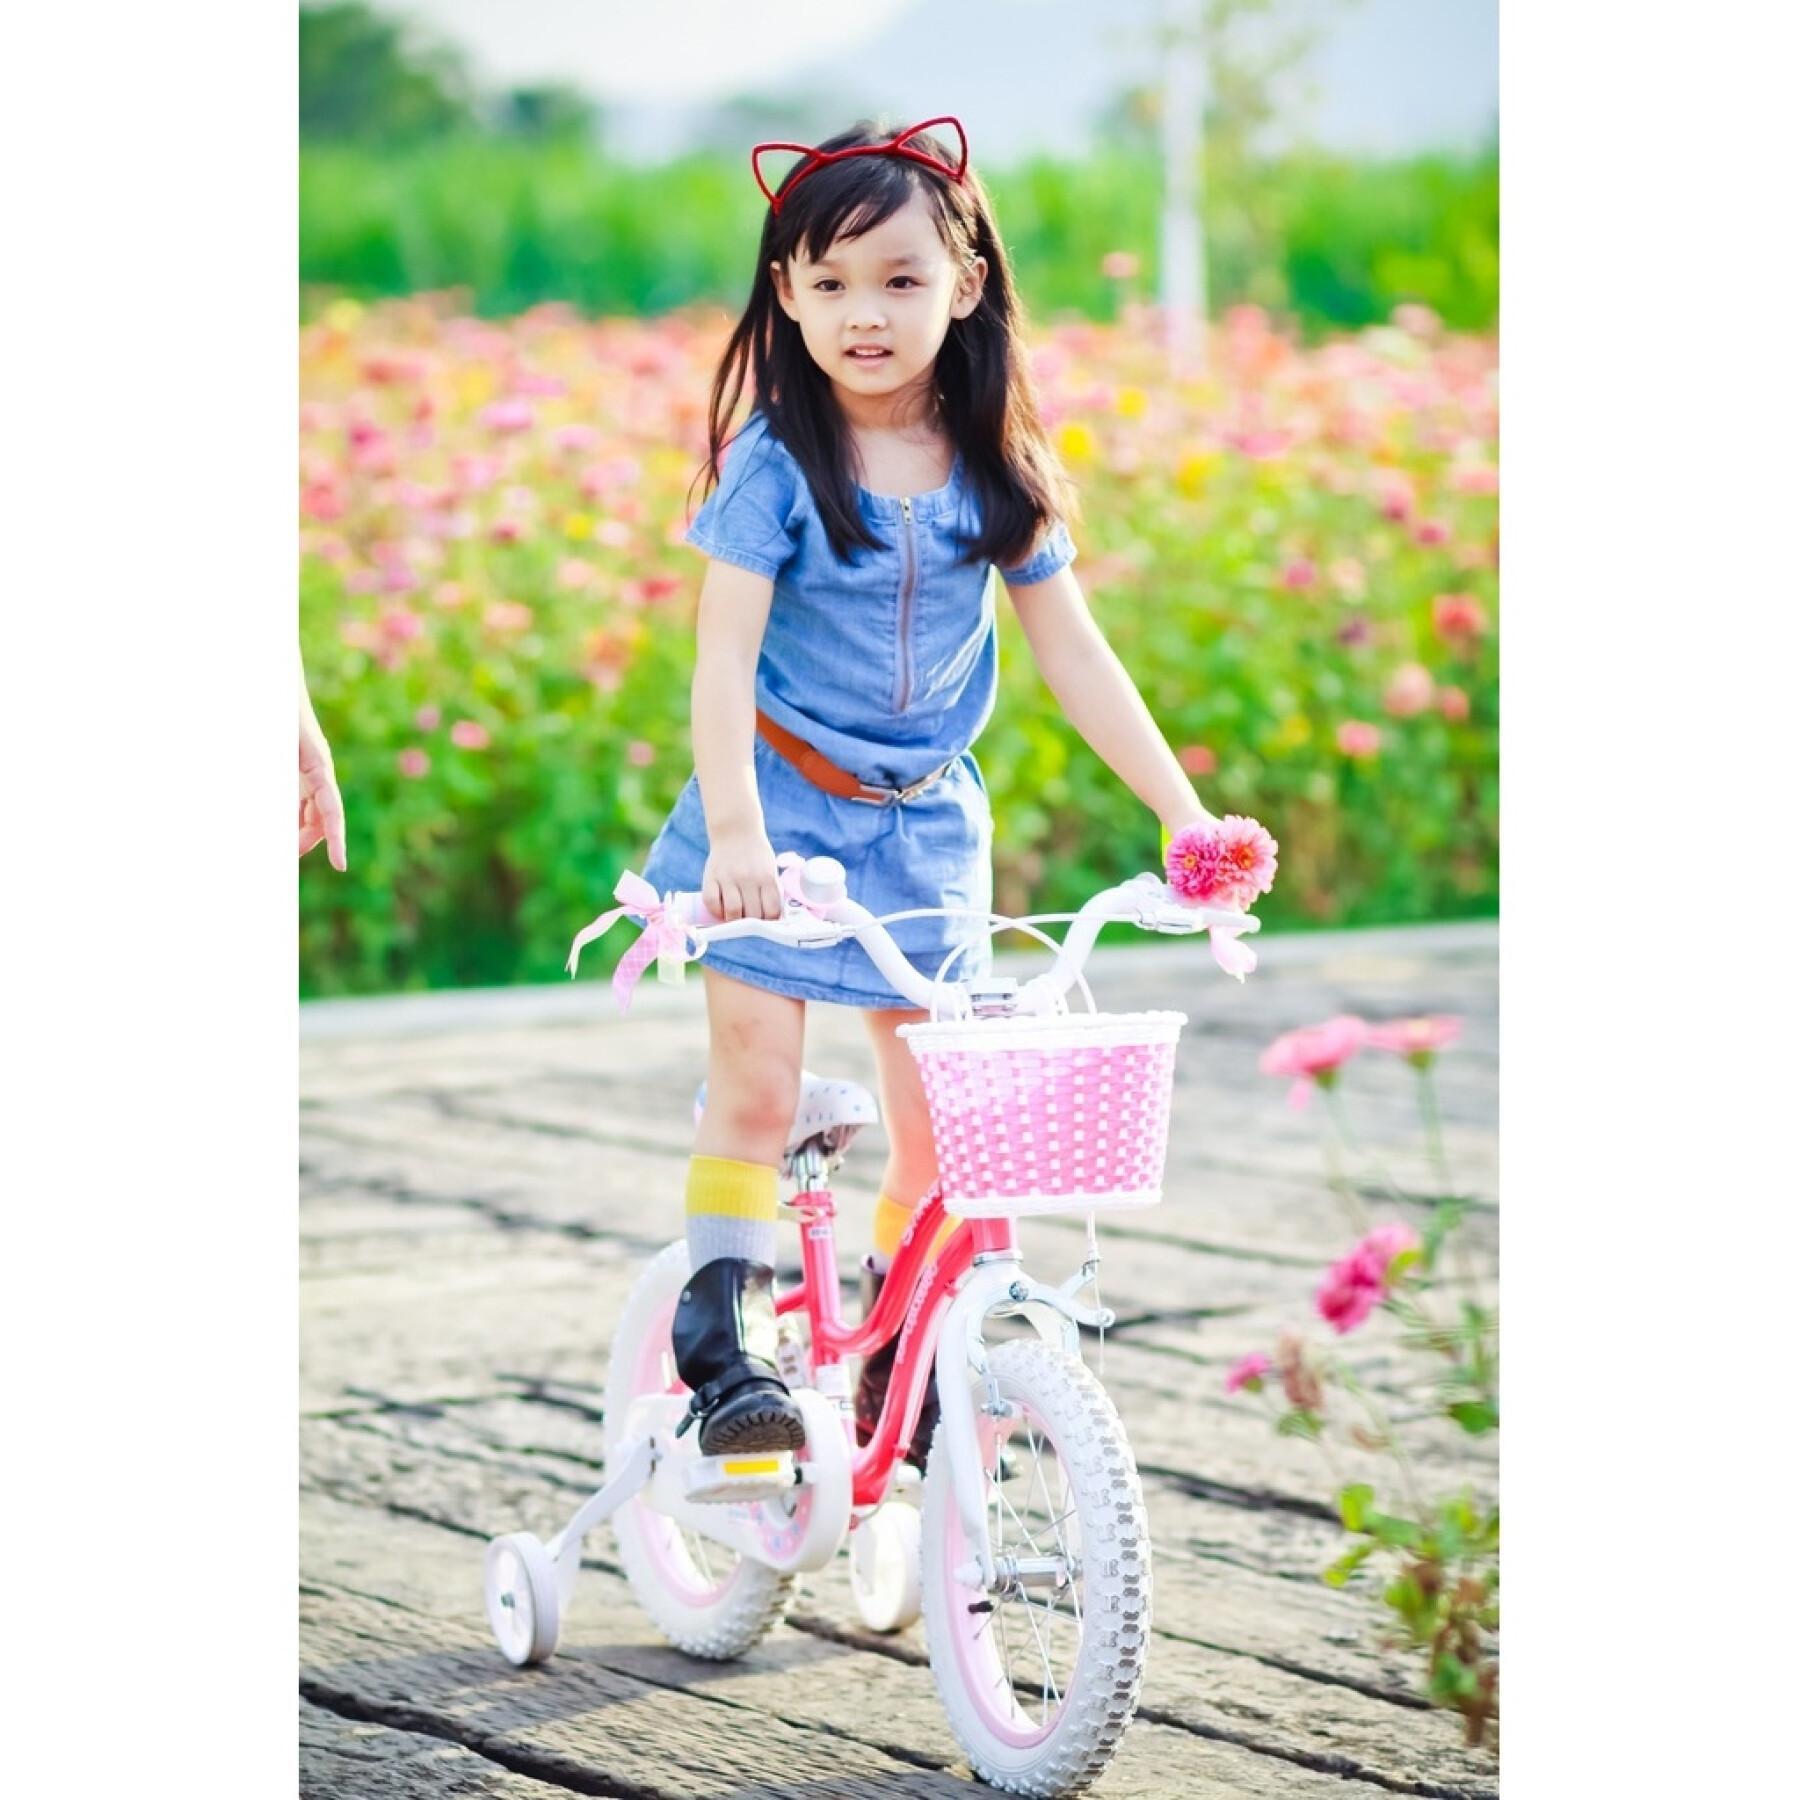 Fahrrad Mädchen RoyalBaby Star 14